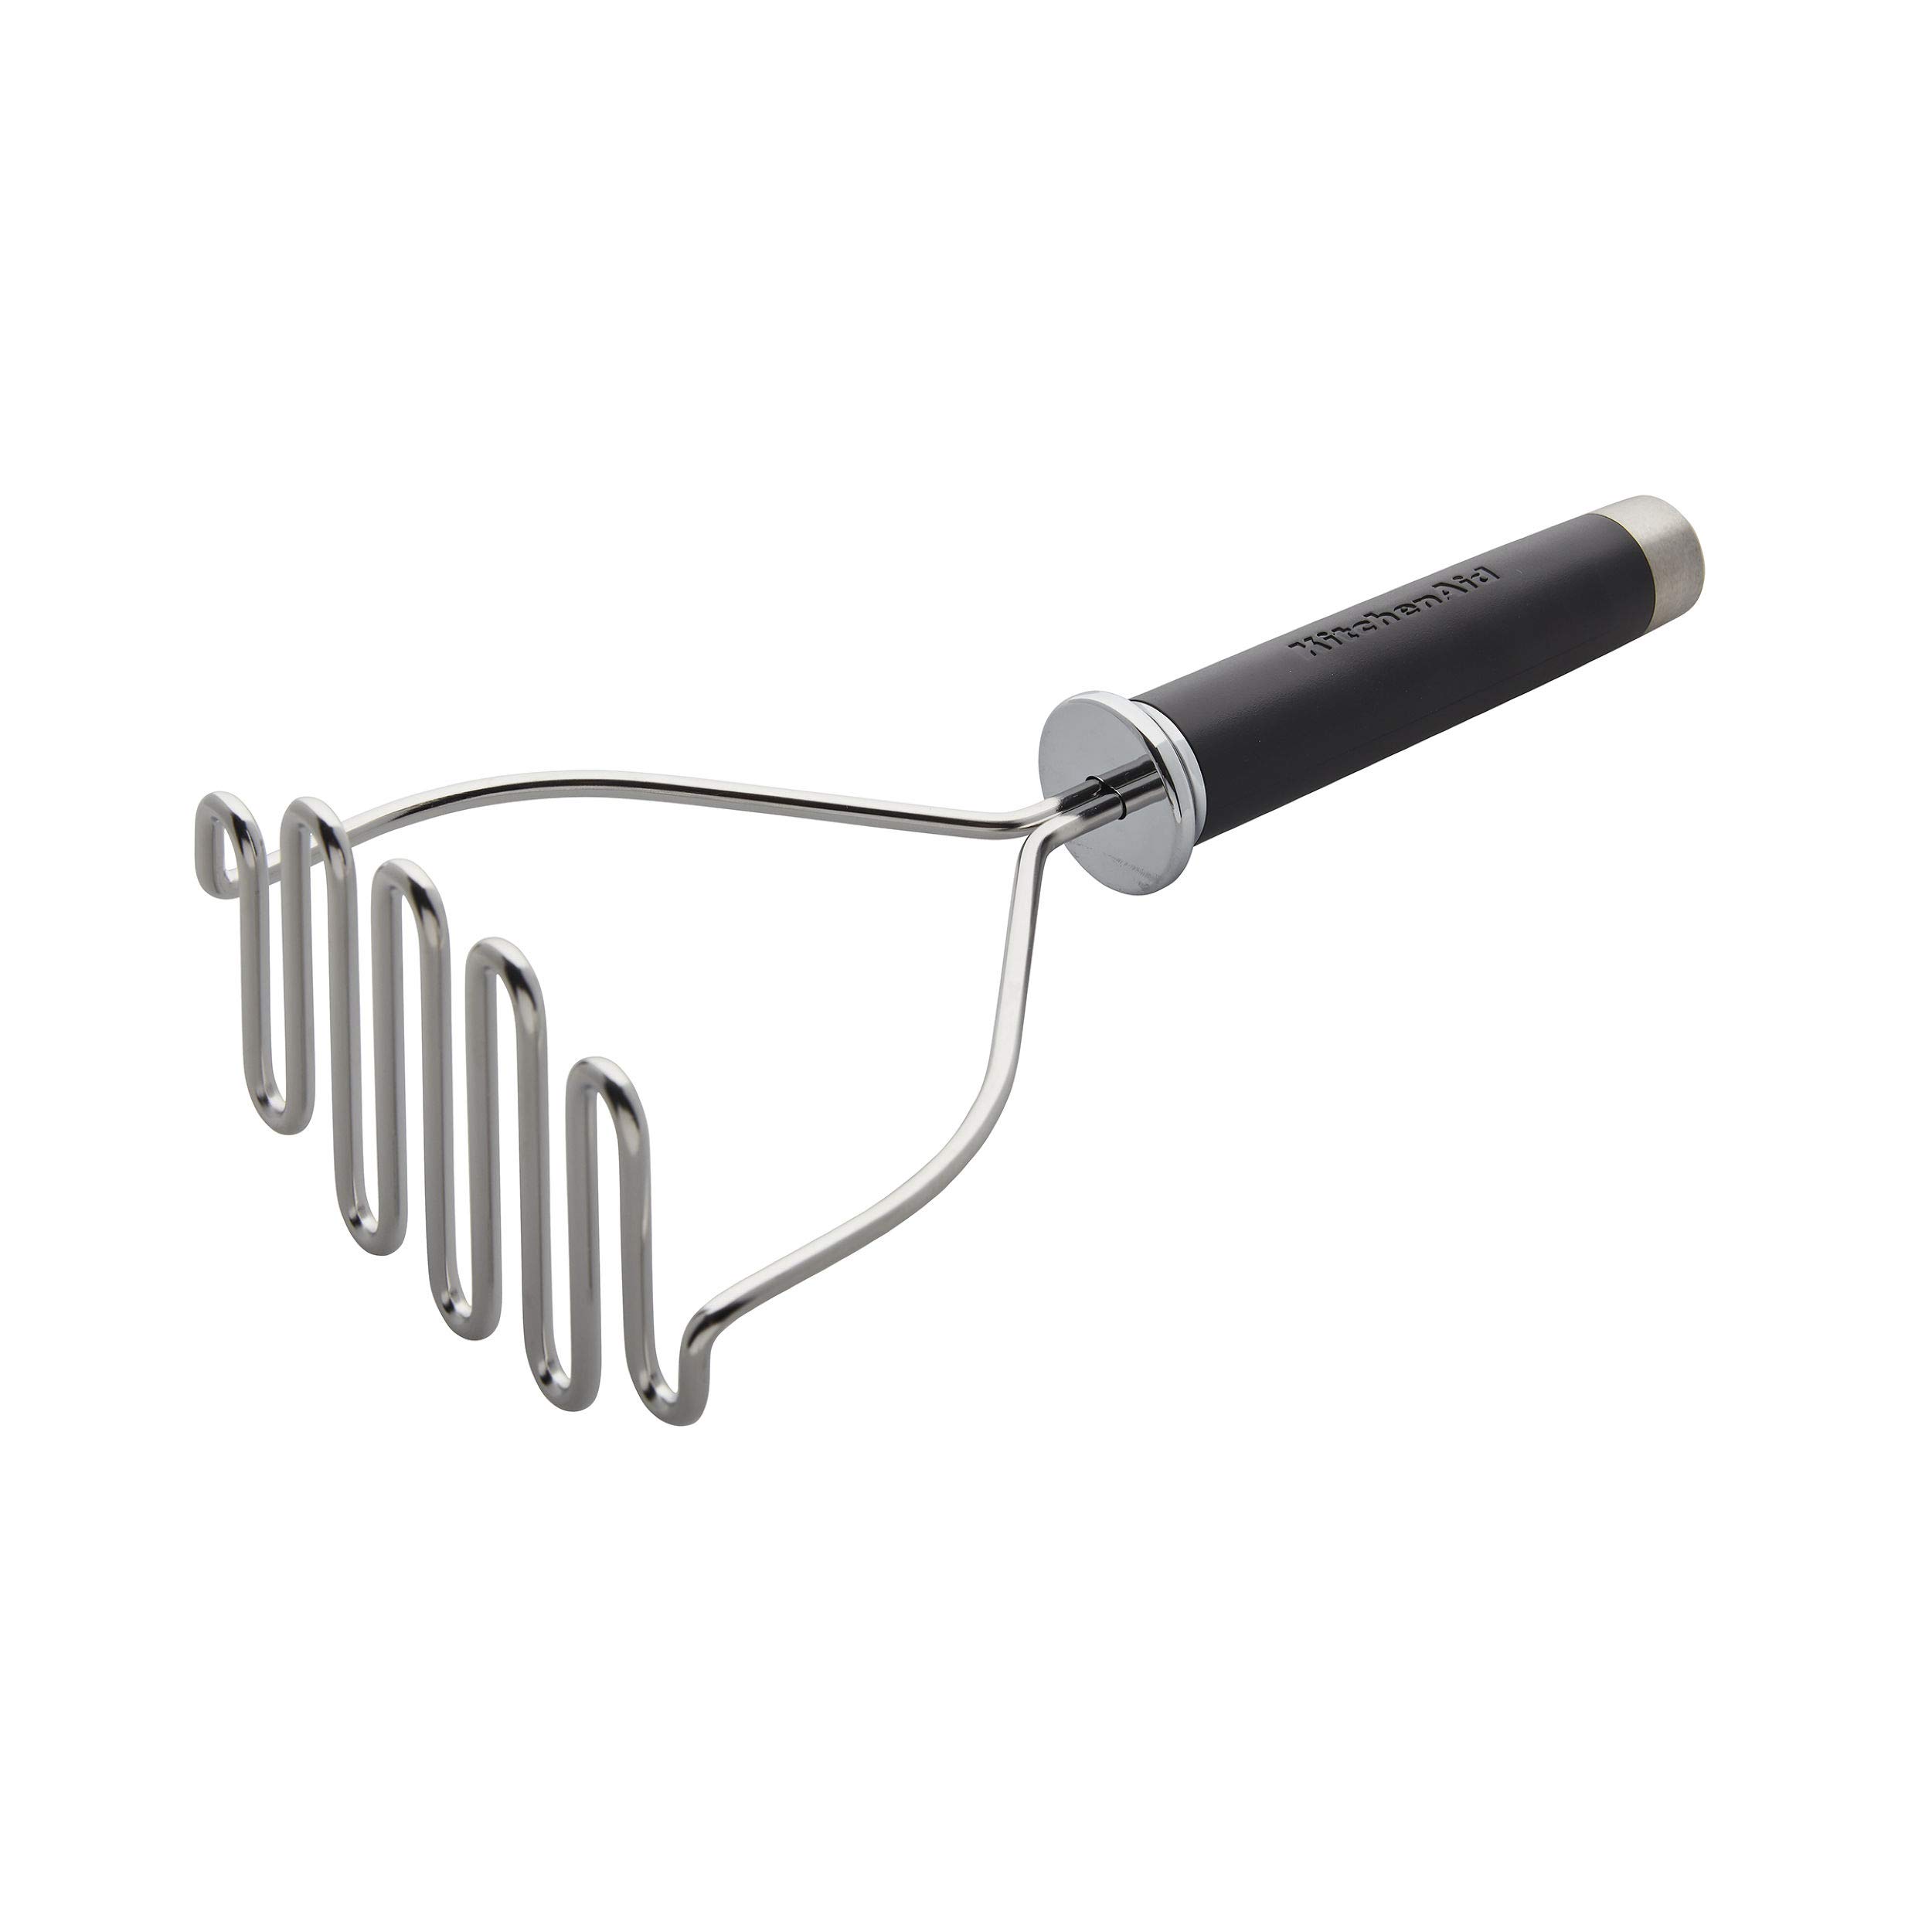 KitchenAid Gourmet Stainless Steel Wire Masher, 10.24-Inch, Black